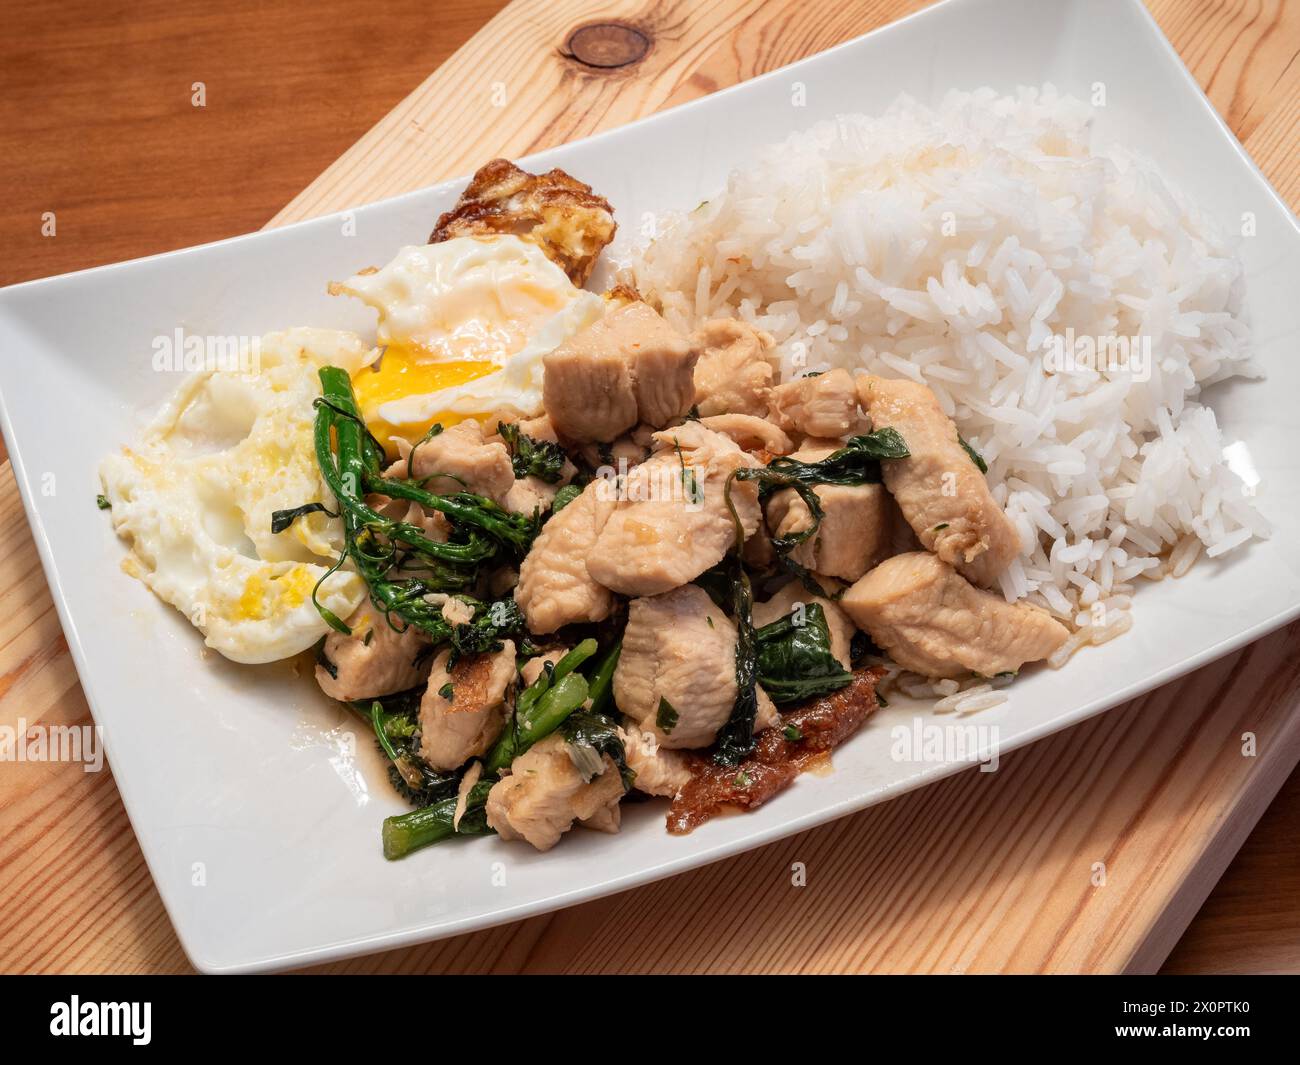 Laissez-vous tenter par les saveurs du poulet au basilic thaïlandais servi avec un œuf parfaitement frit, du broccolini et du riz au jasmin parfumé, élégamment présenté sur un blanc Banque D'Images